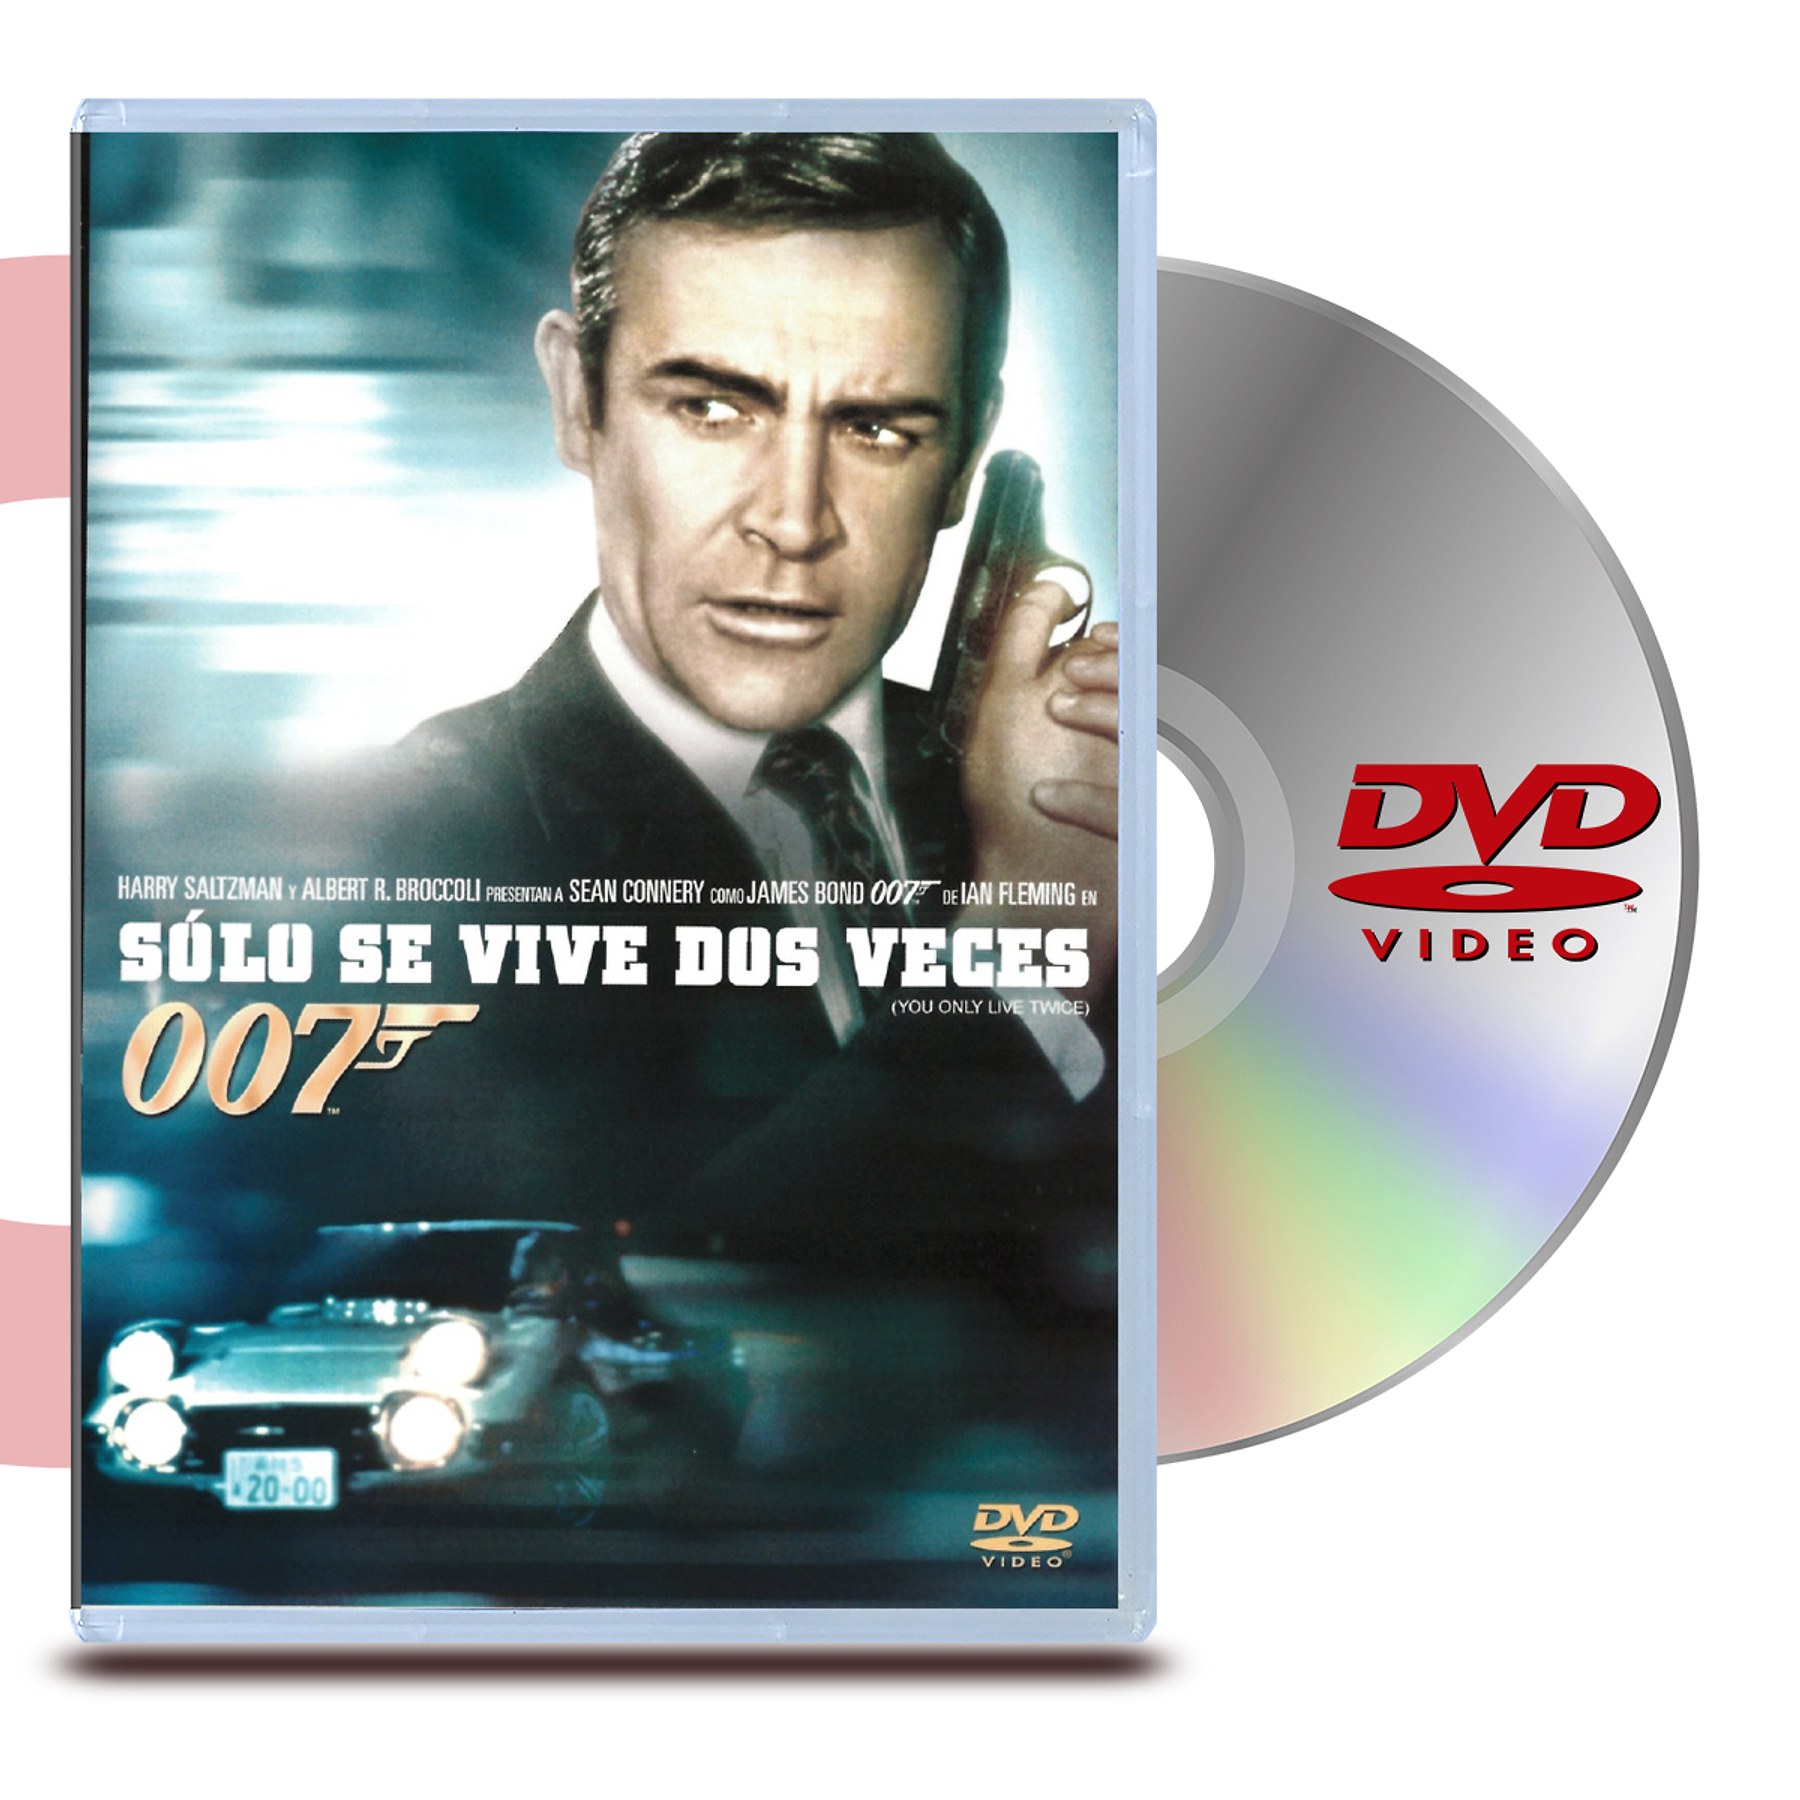 DVD 007 SOLO SE VIVE DOS VECES